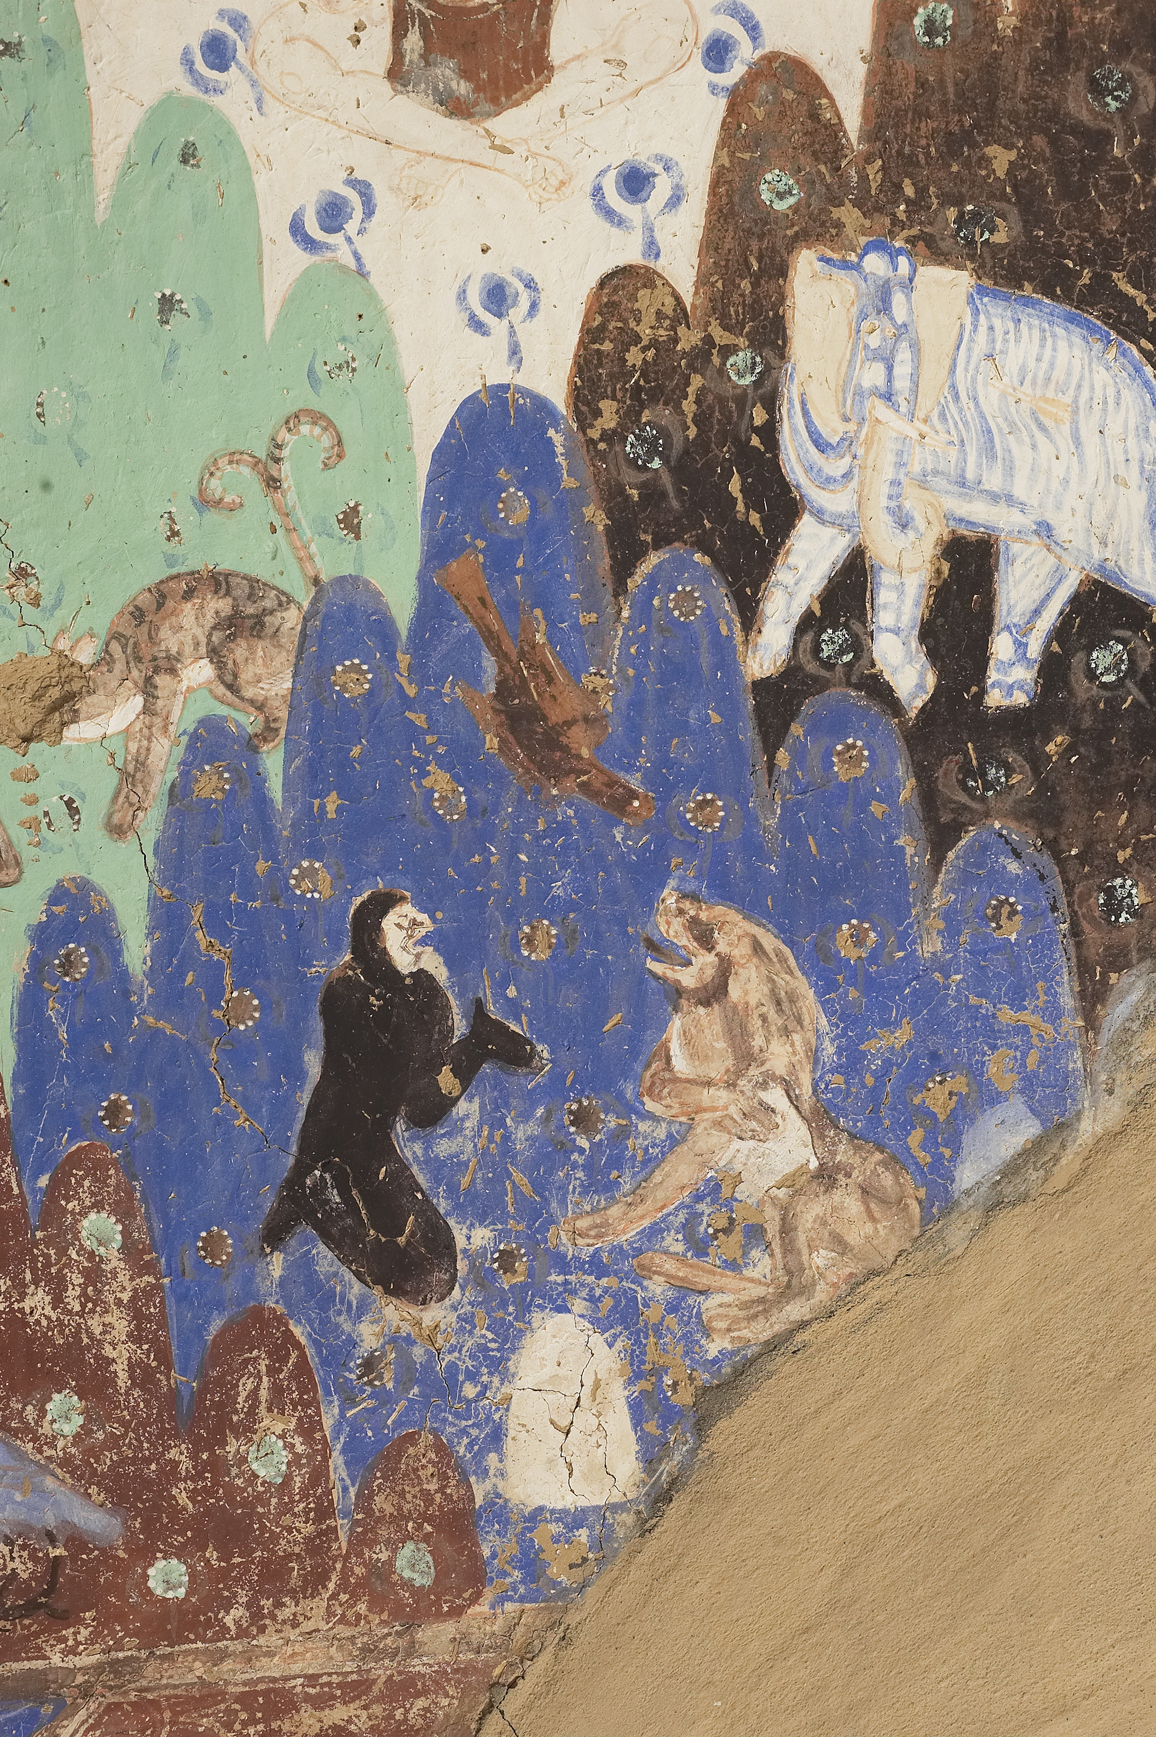 丝路明珠——龟兹石窟壁画艺术线上虚拟展” - 马耳他中国文化中心